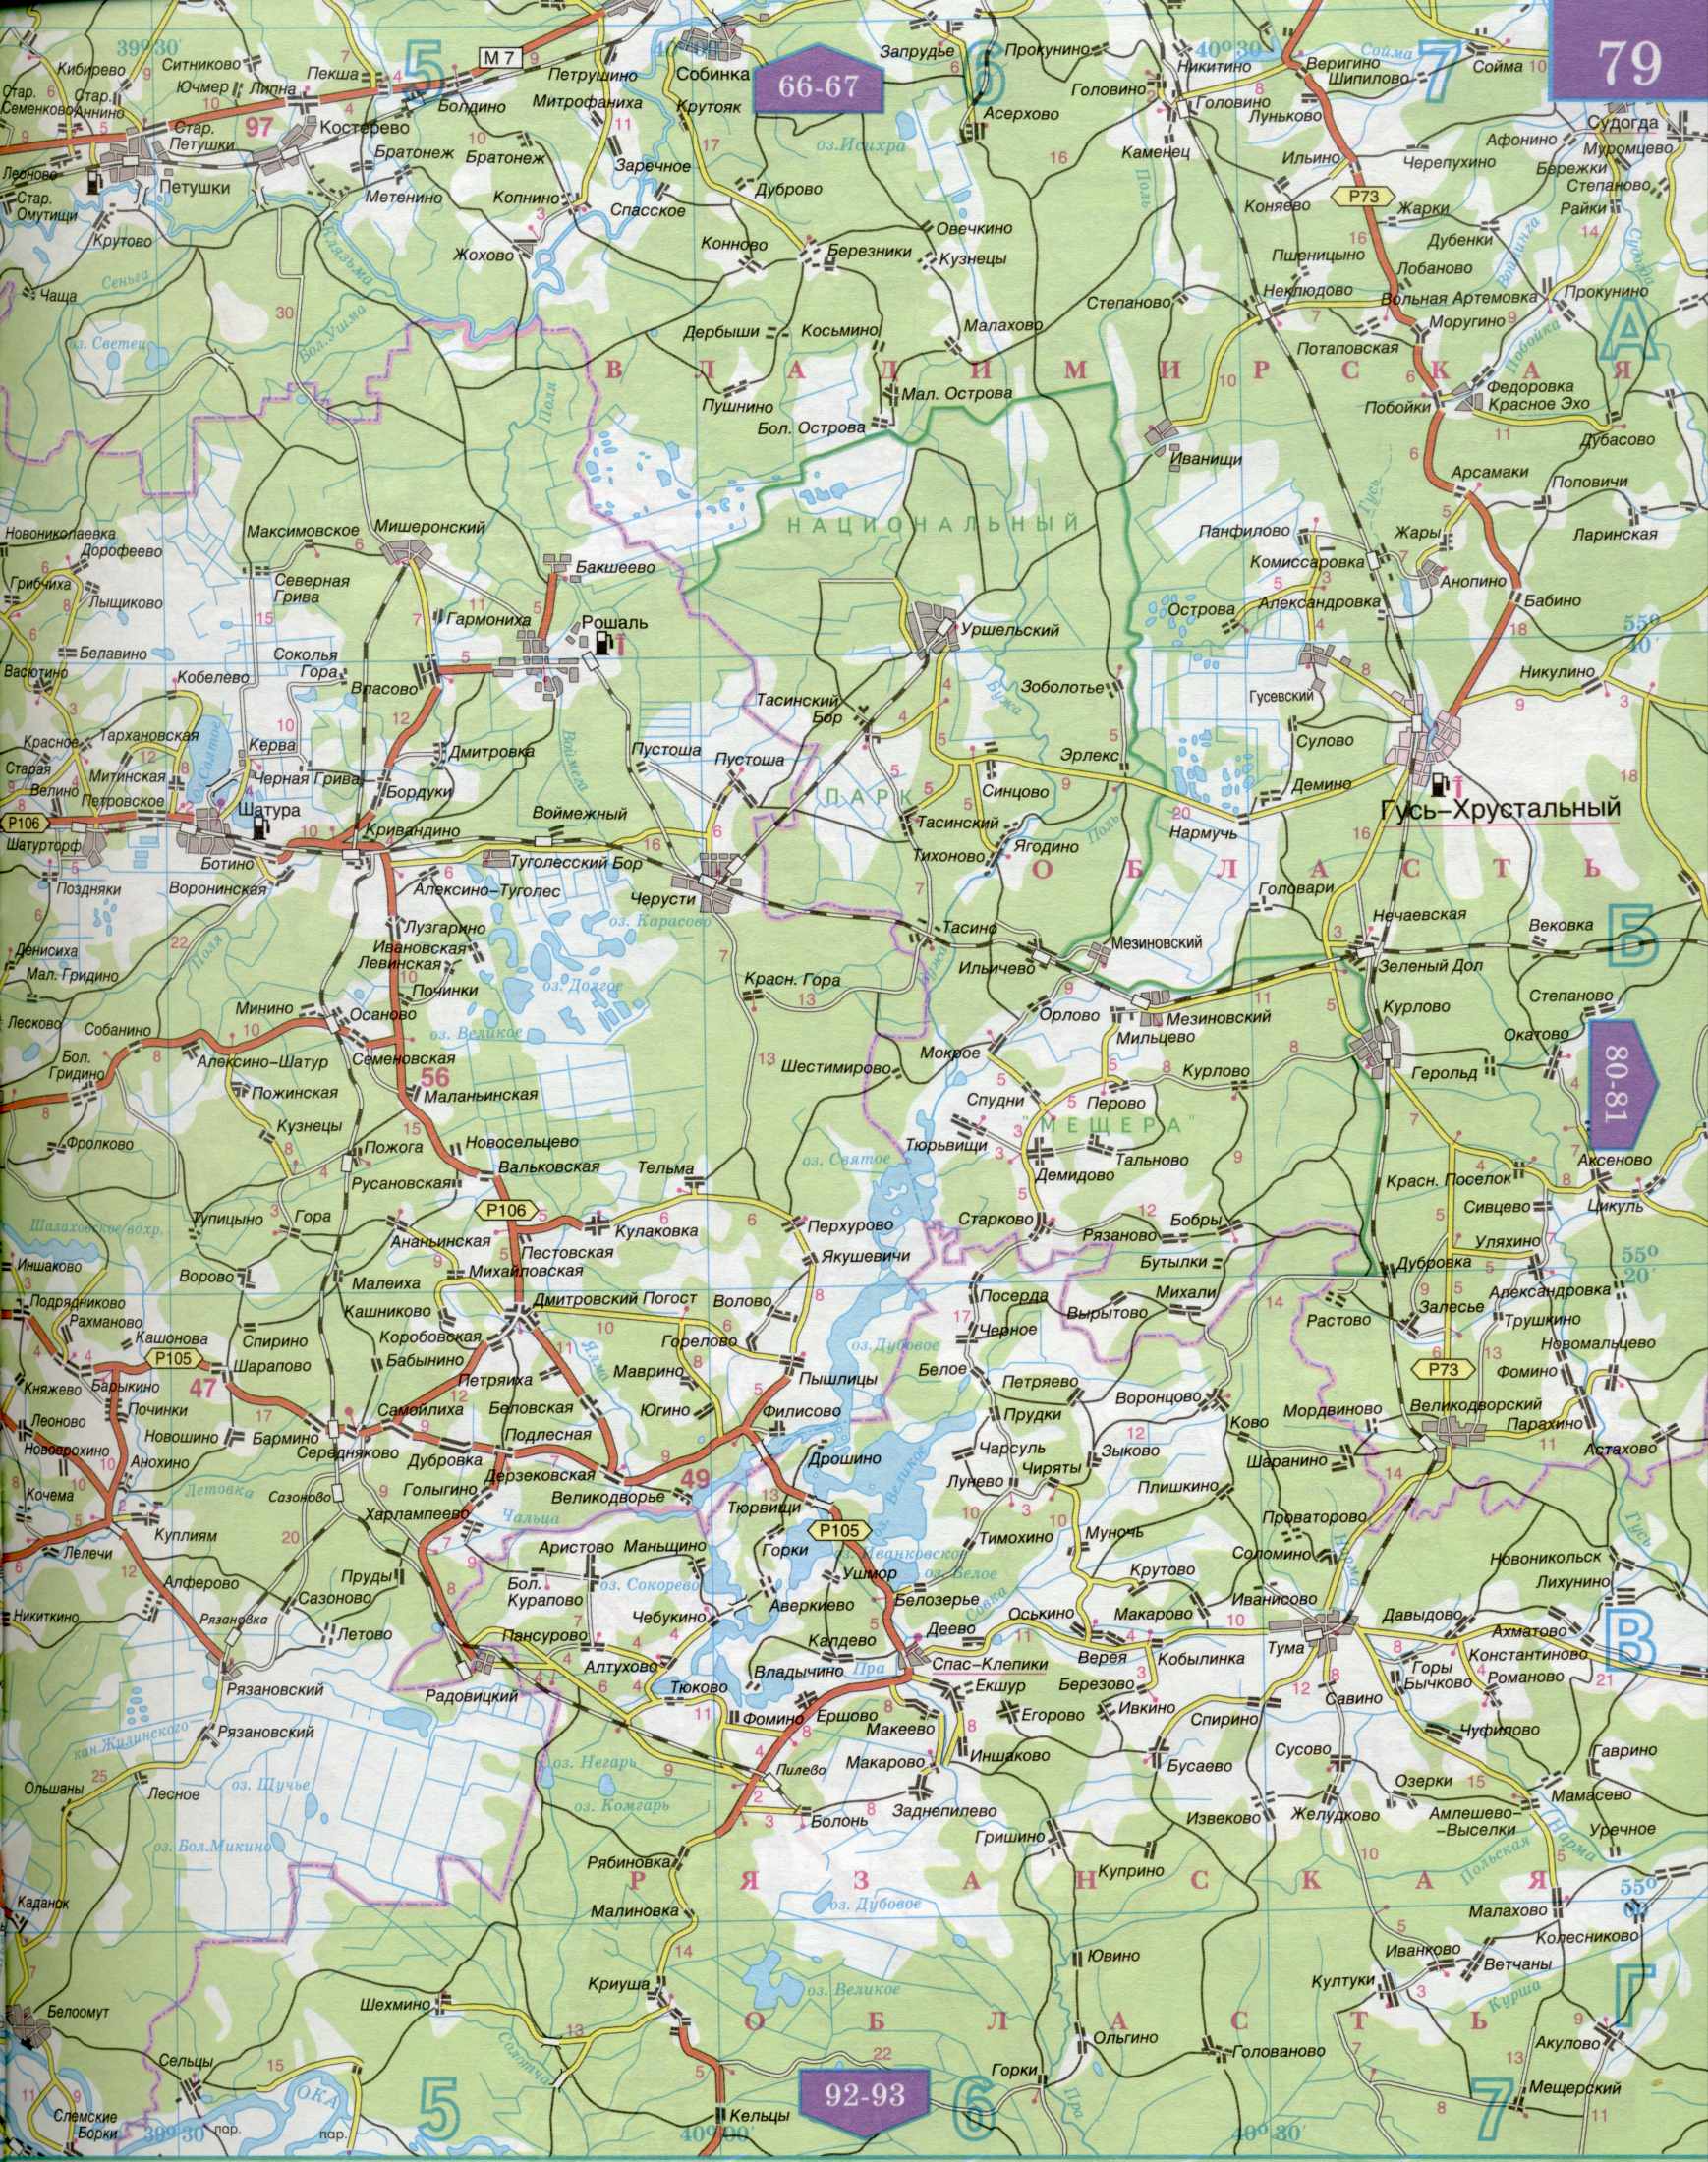 Карта автомобильных дорог Московской области 1см=5км. Подробная карта автомобильных дорог  - Московская область и прилегающие территории. Скачать бесплатно, D1 - 